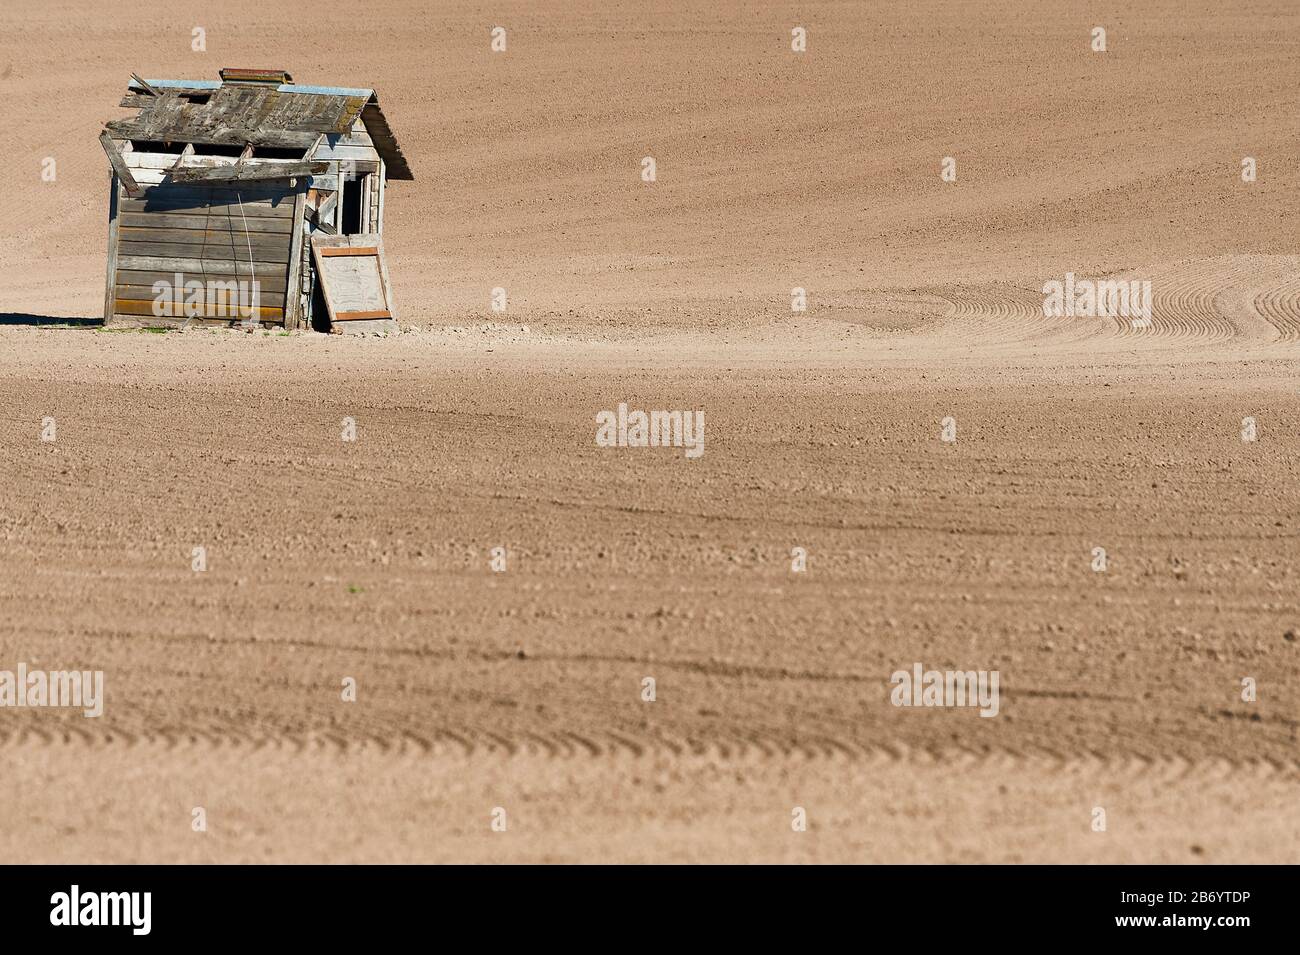 Terrain agricole fraîchement travaillé avec une cabane isolée dans cette image minimaliste. Banque D'Images